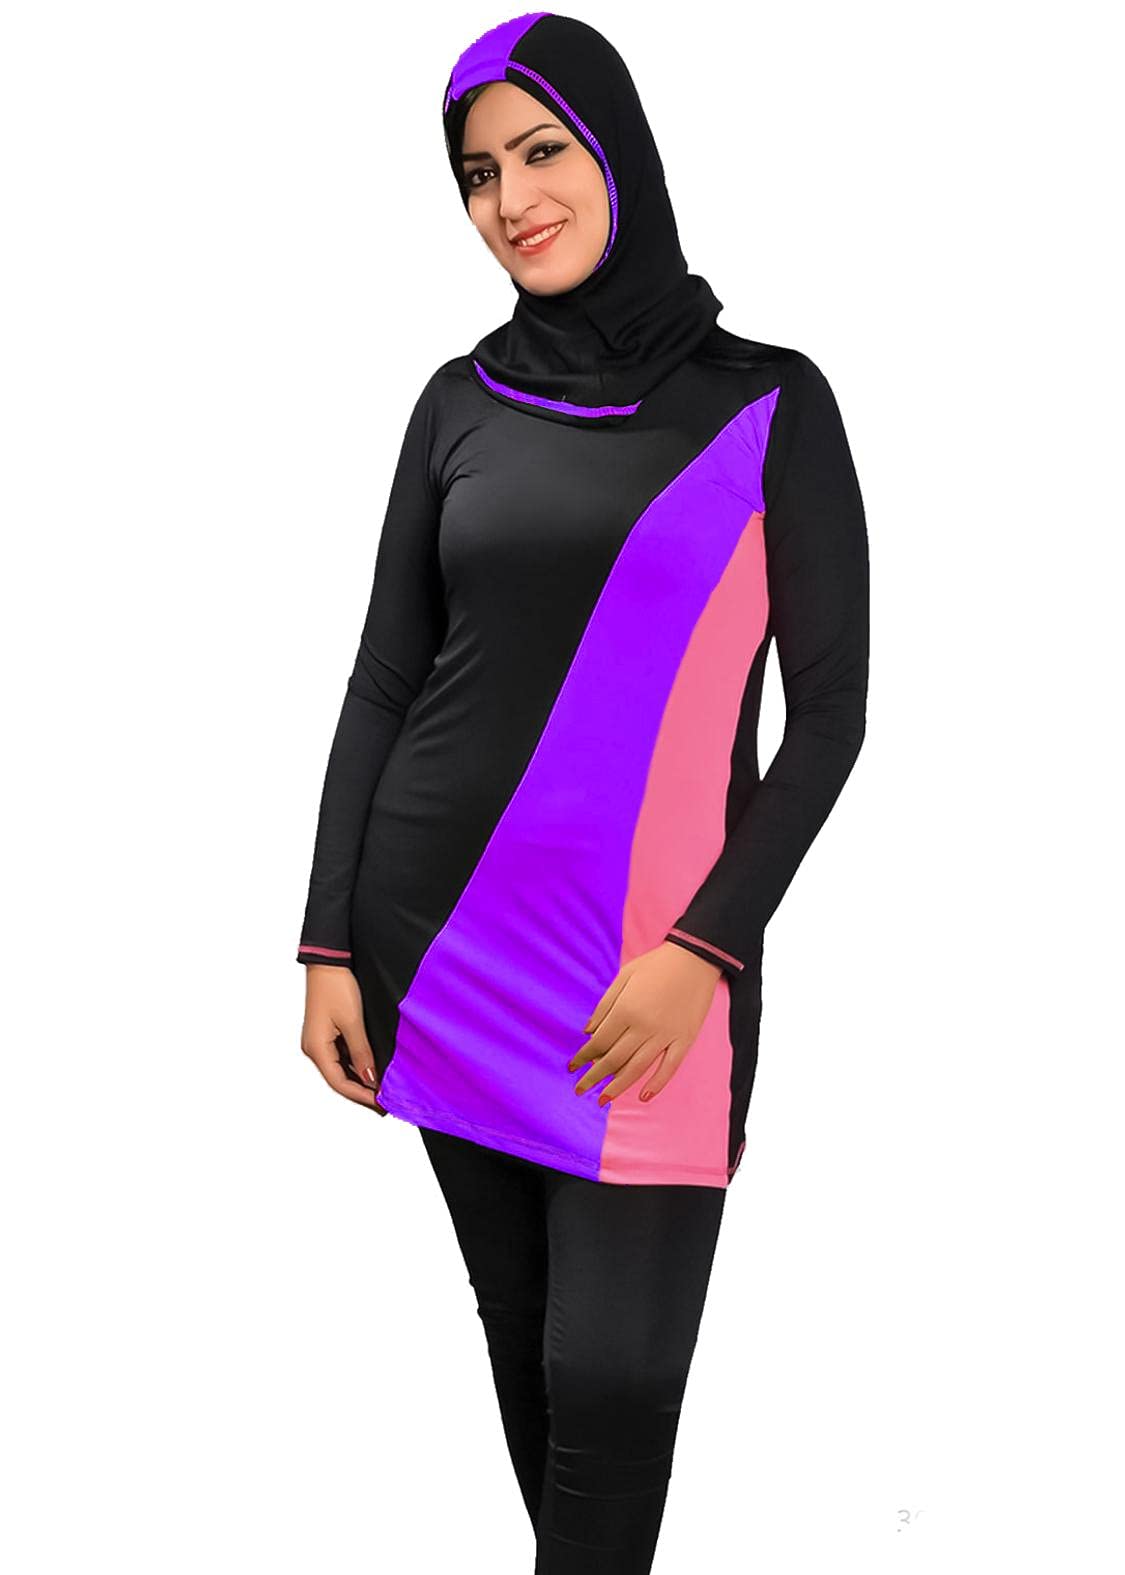 Sharia Burqini Swimwear - Color For Women Color Black Size L